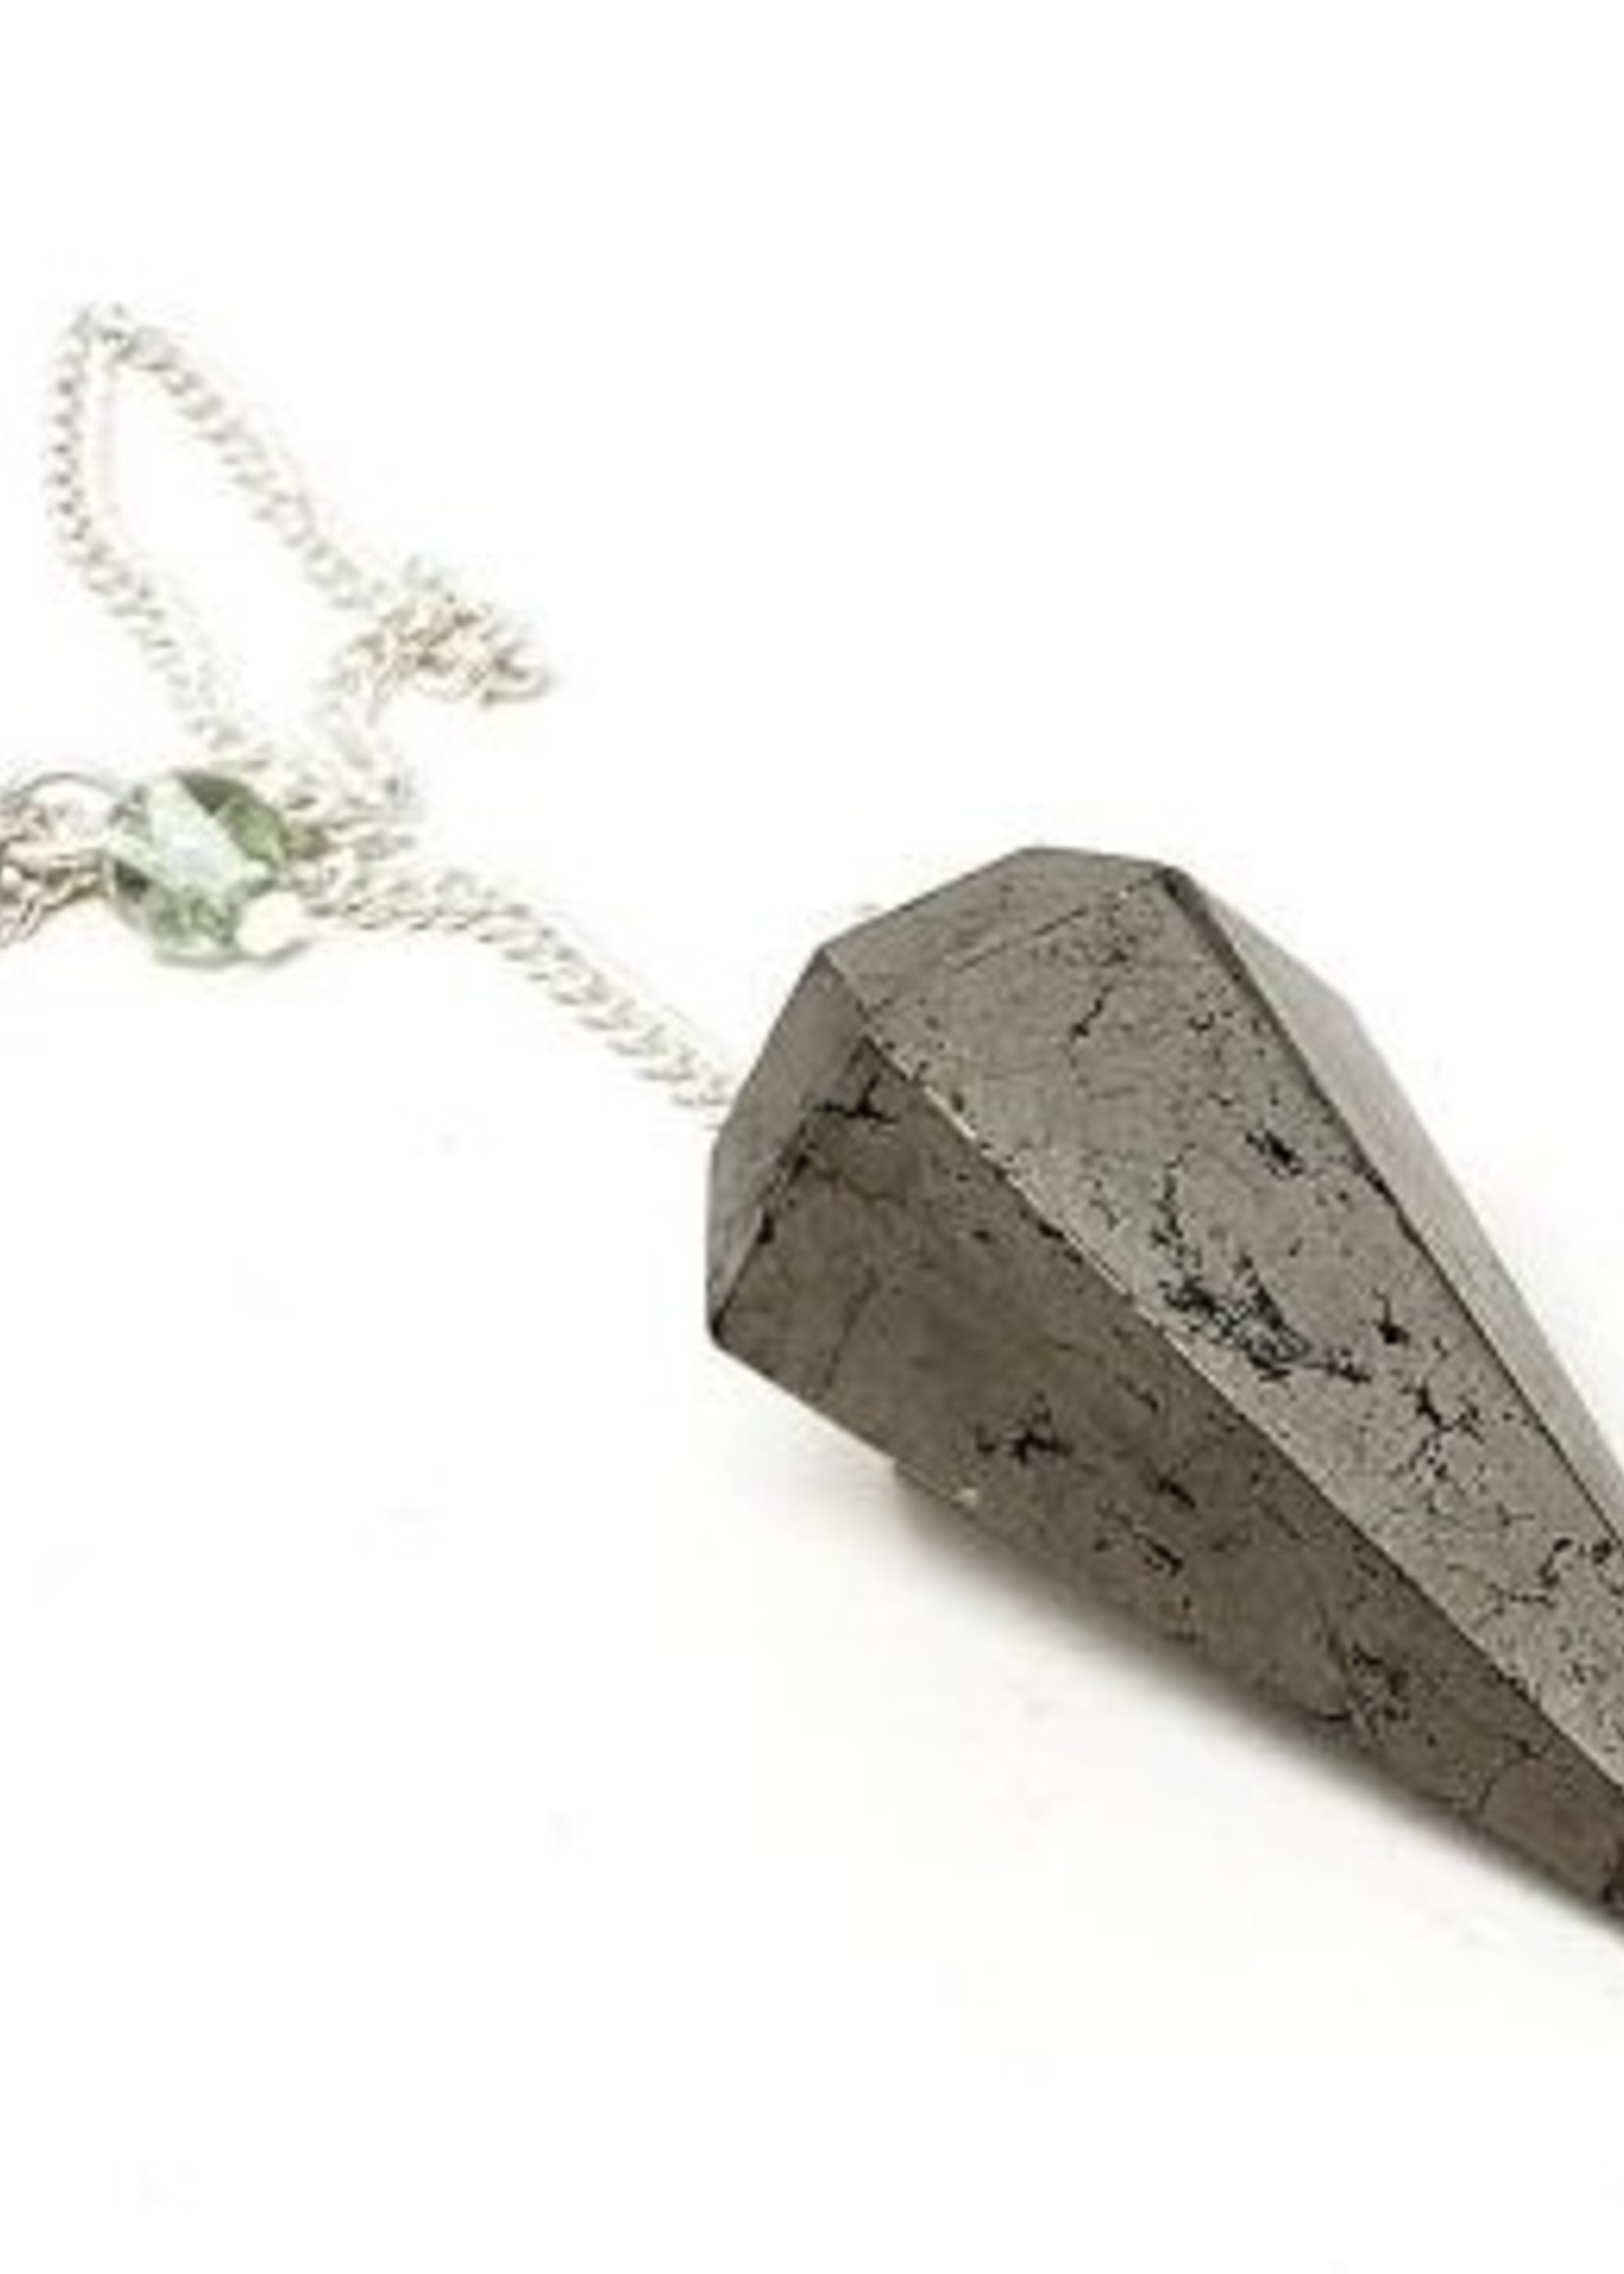 Pyrite Pendulum